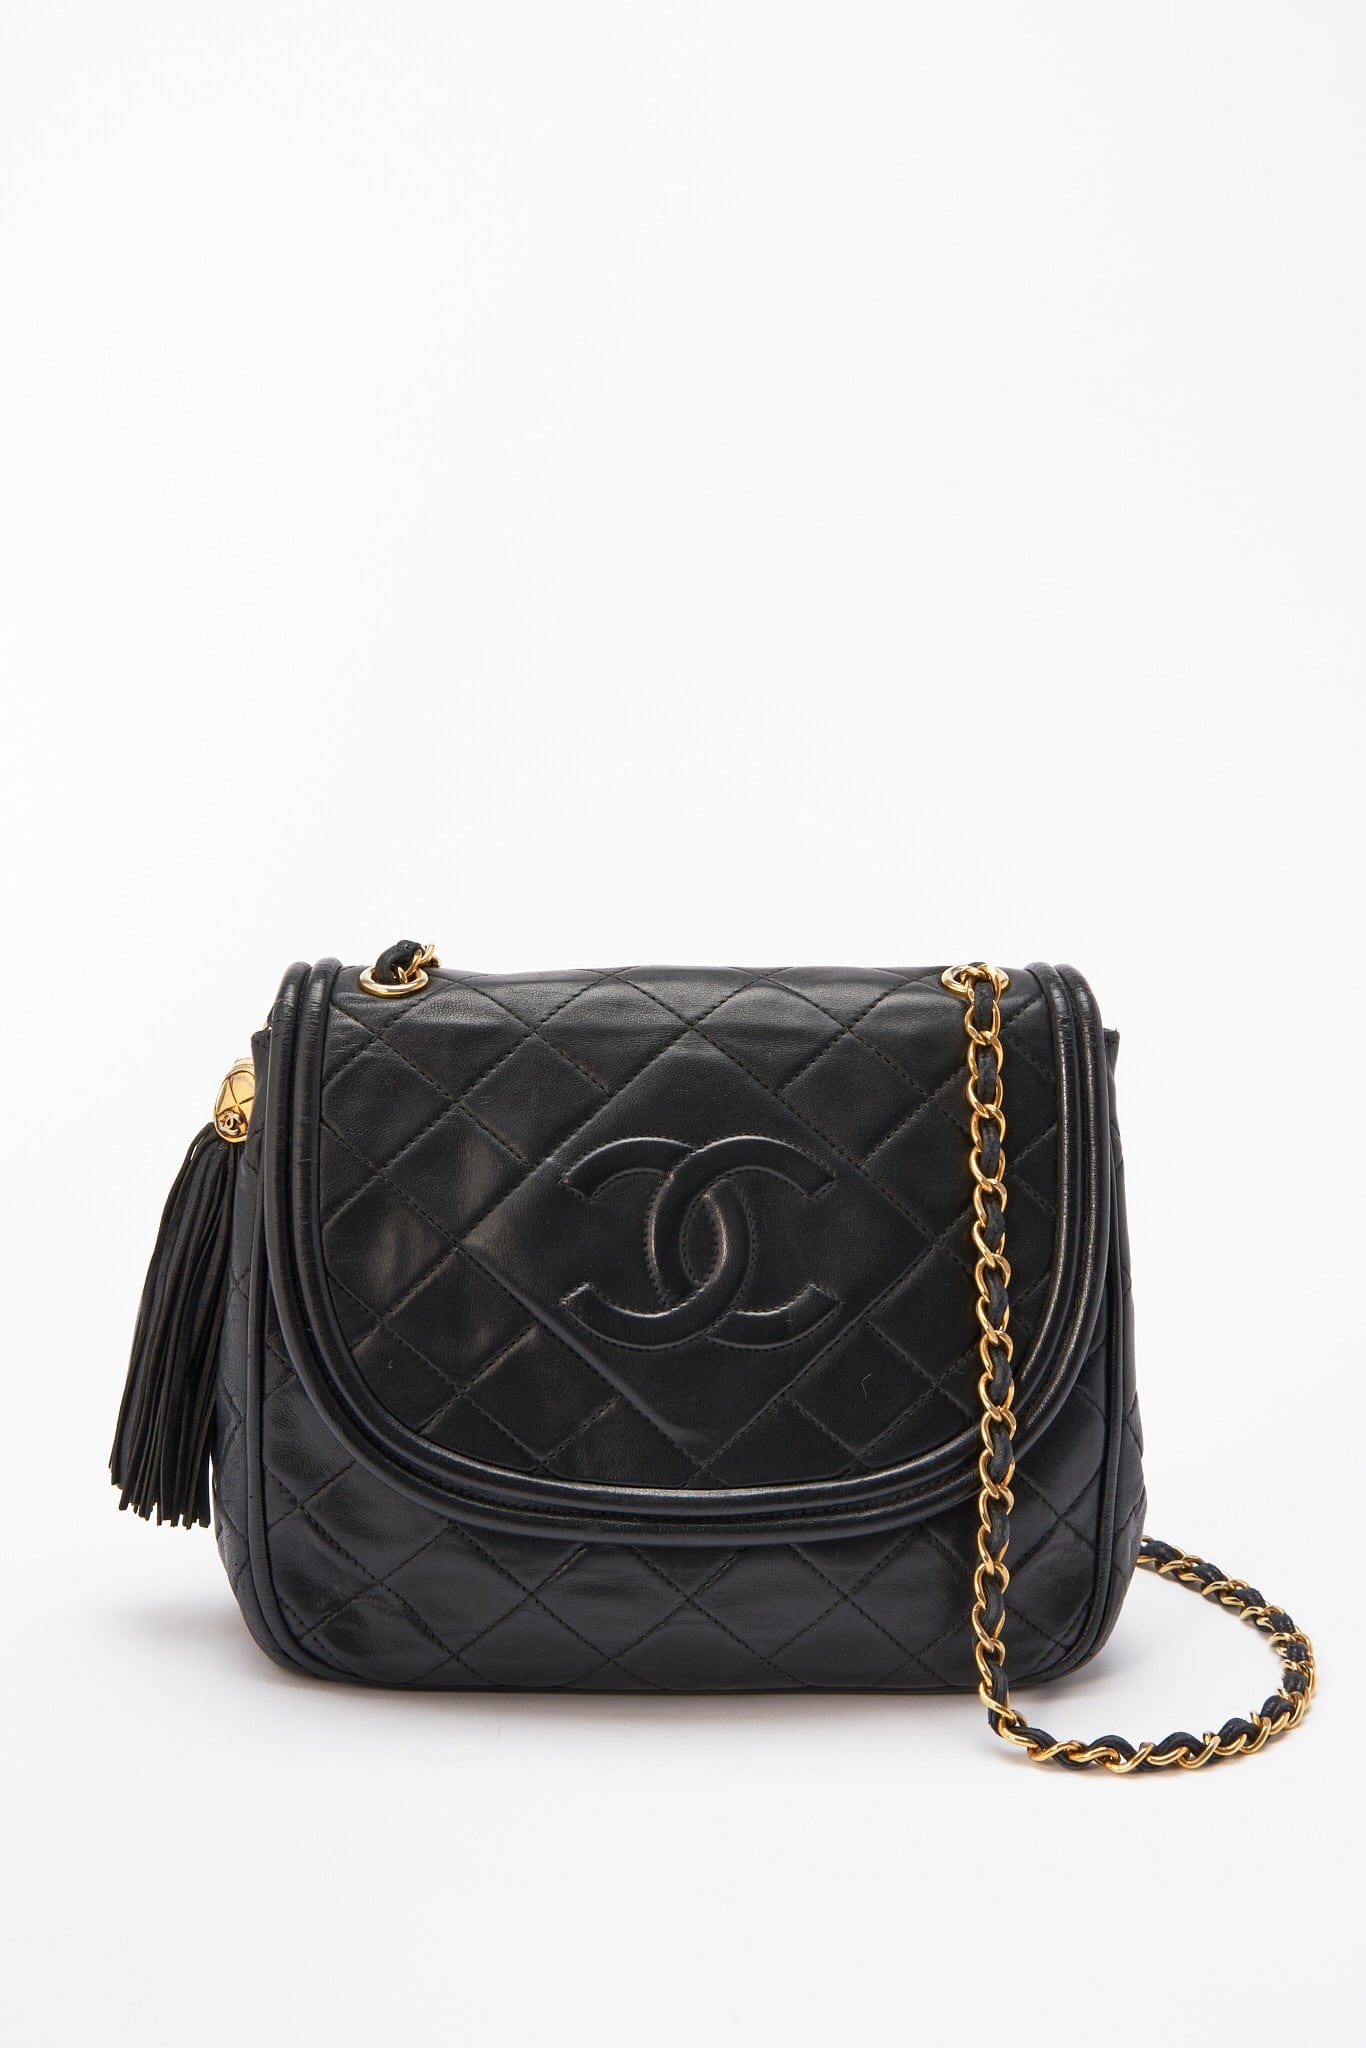 CHANEL, Bags, Vintage Chanel Flap Shoulder Bag